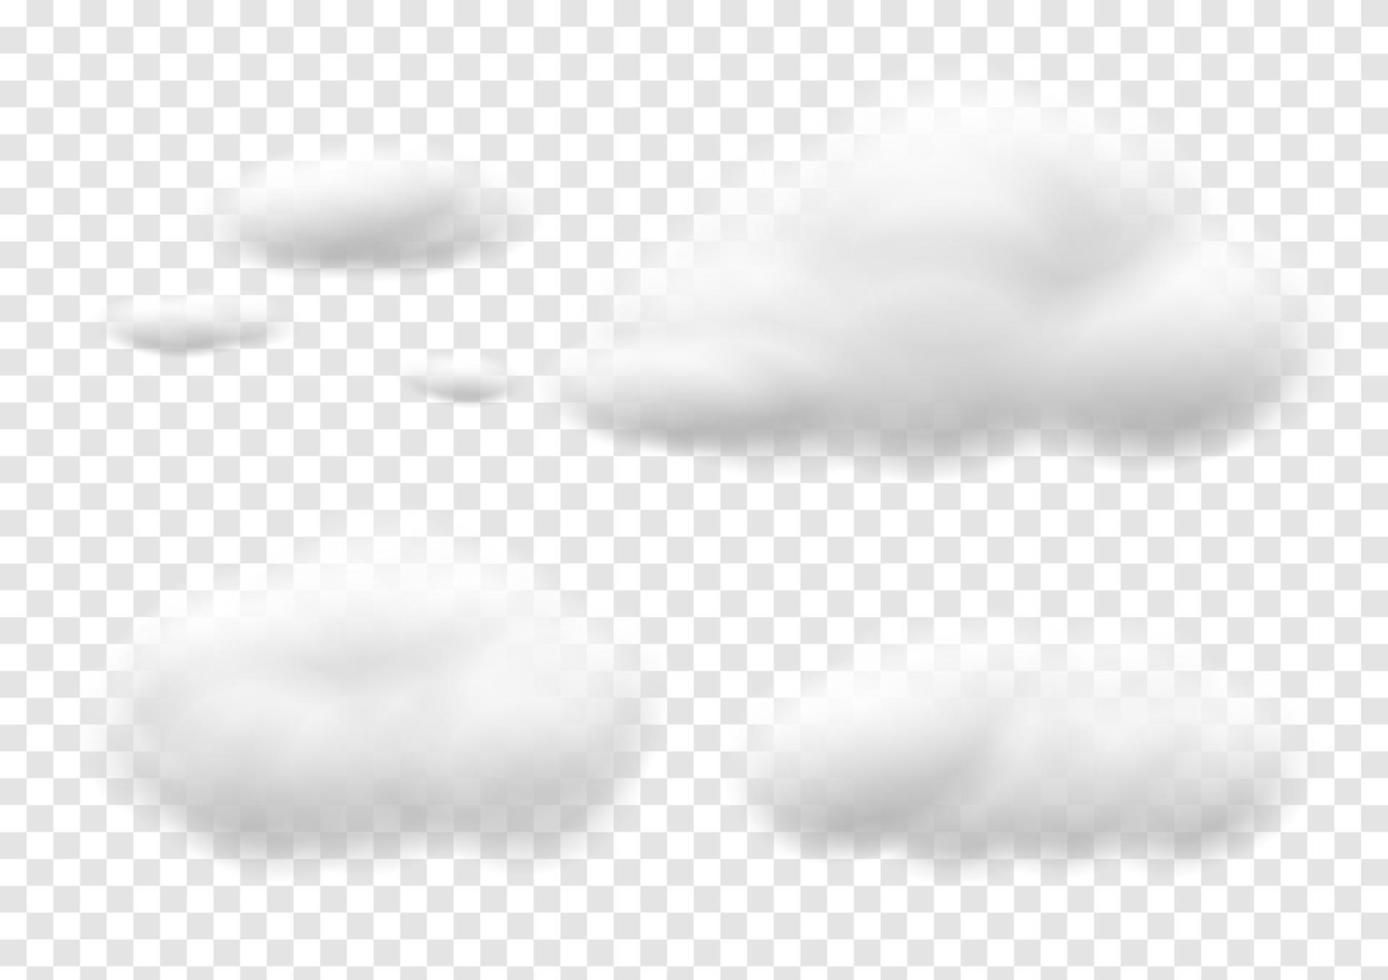 realistische weiße wolkenvektoren lokalisiert auf weißem hintergrund, flauschige würfel wie weiße watte vektor